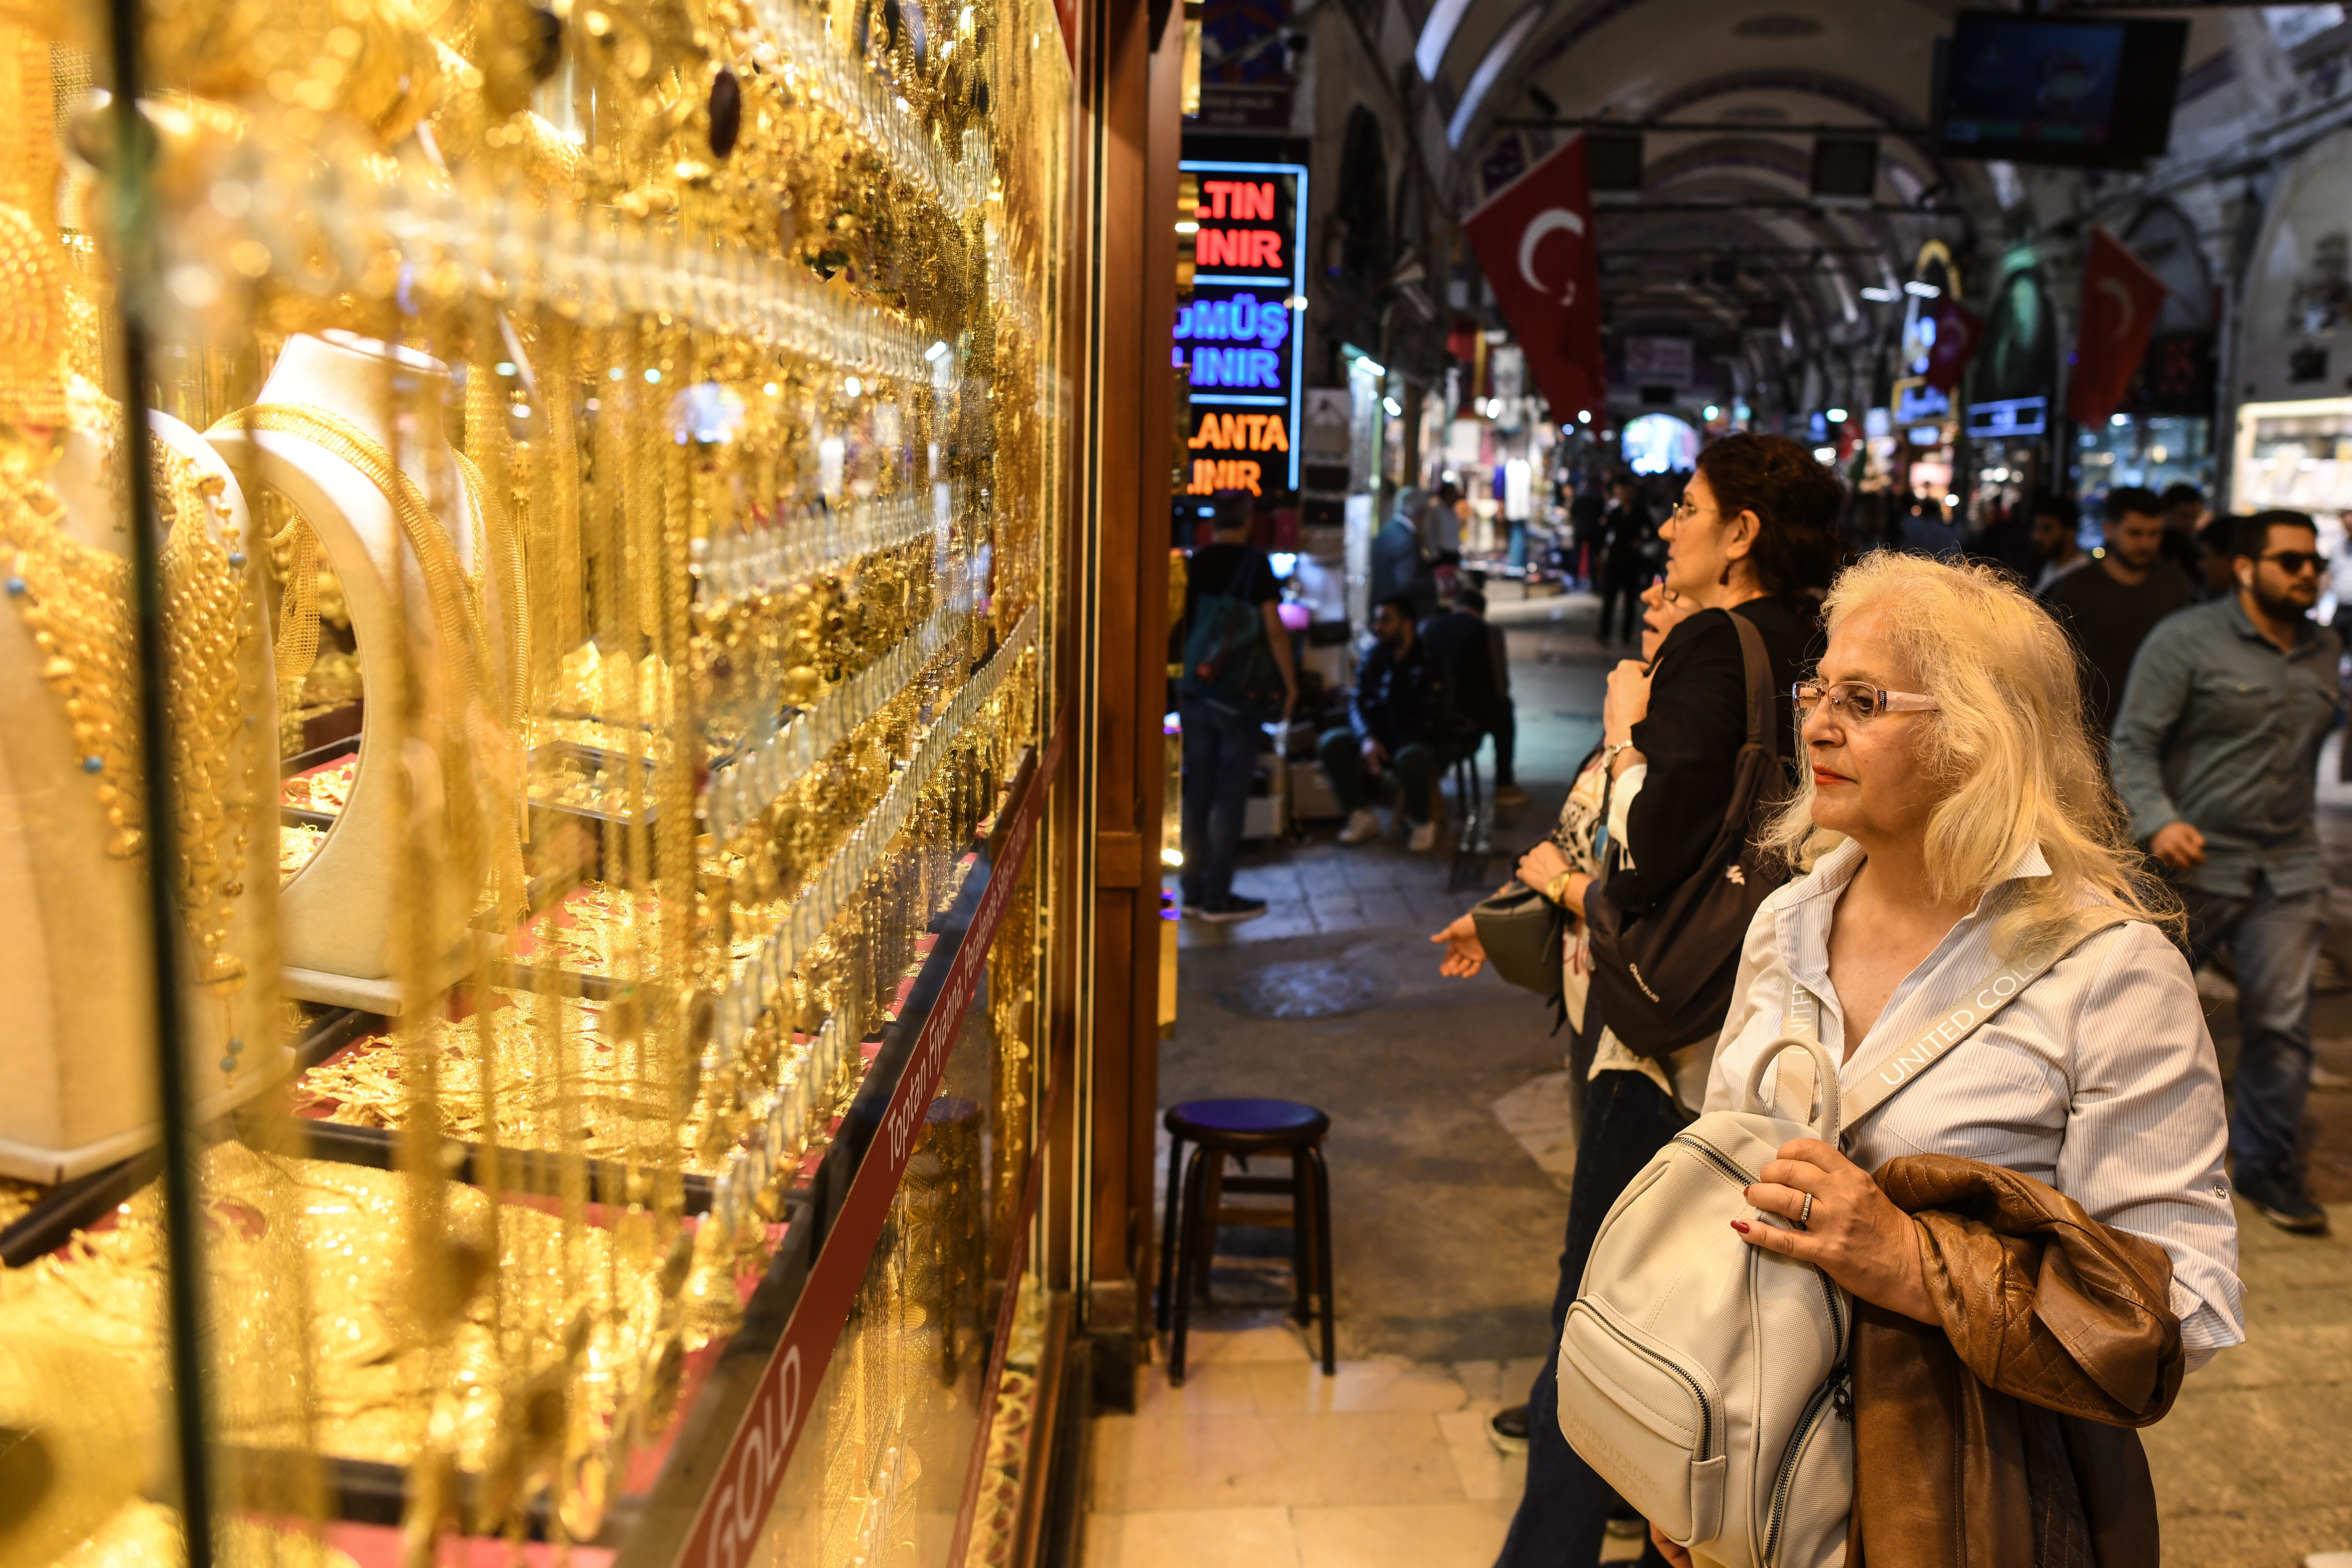 3 600 магазина, до 300 хиляди посетители на ден, милиони евро дневен оборот – всичко това и много повече е най-известният базар в Истанбул